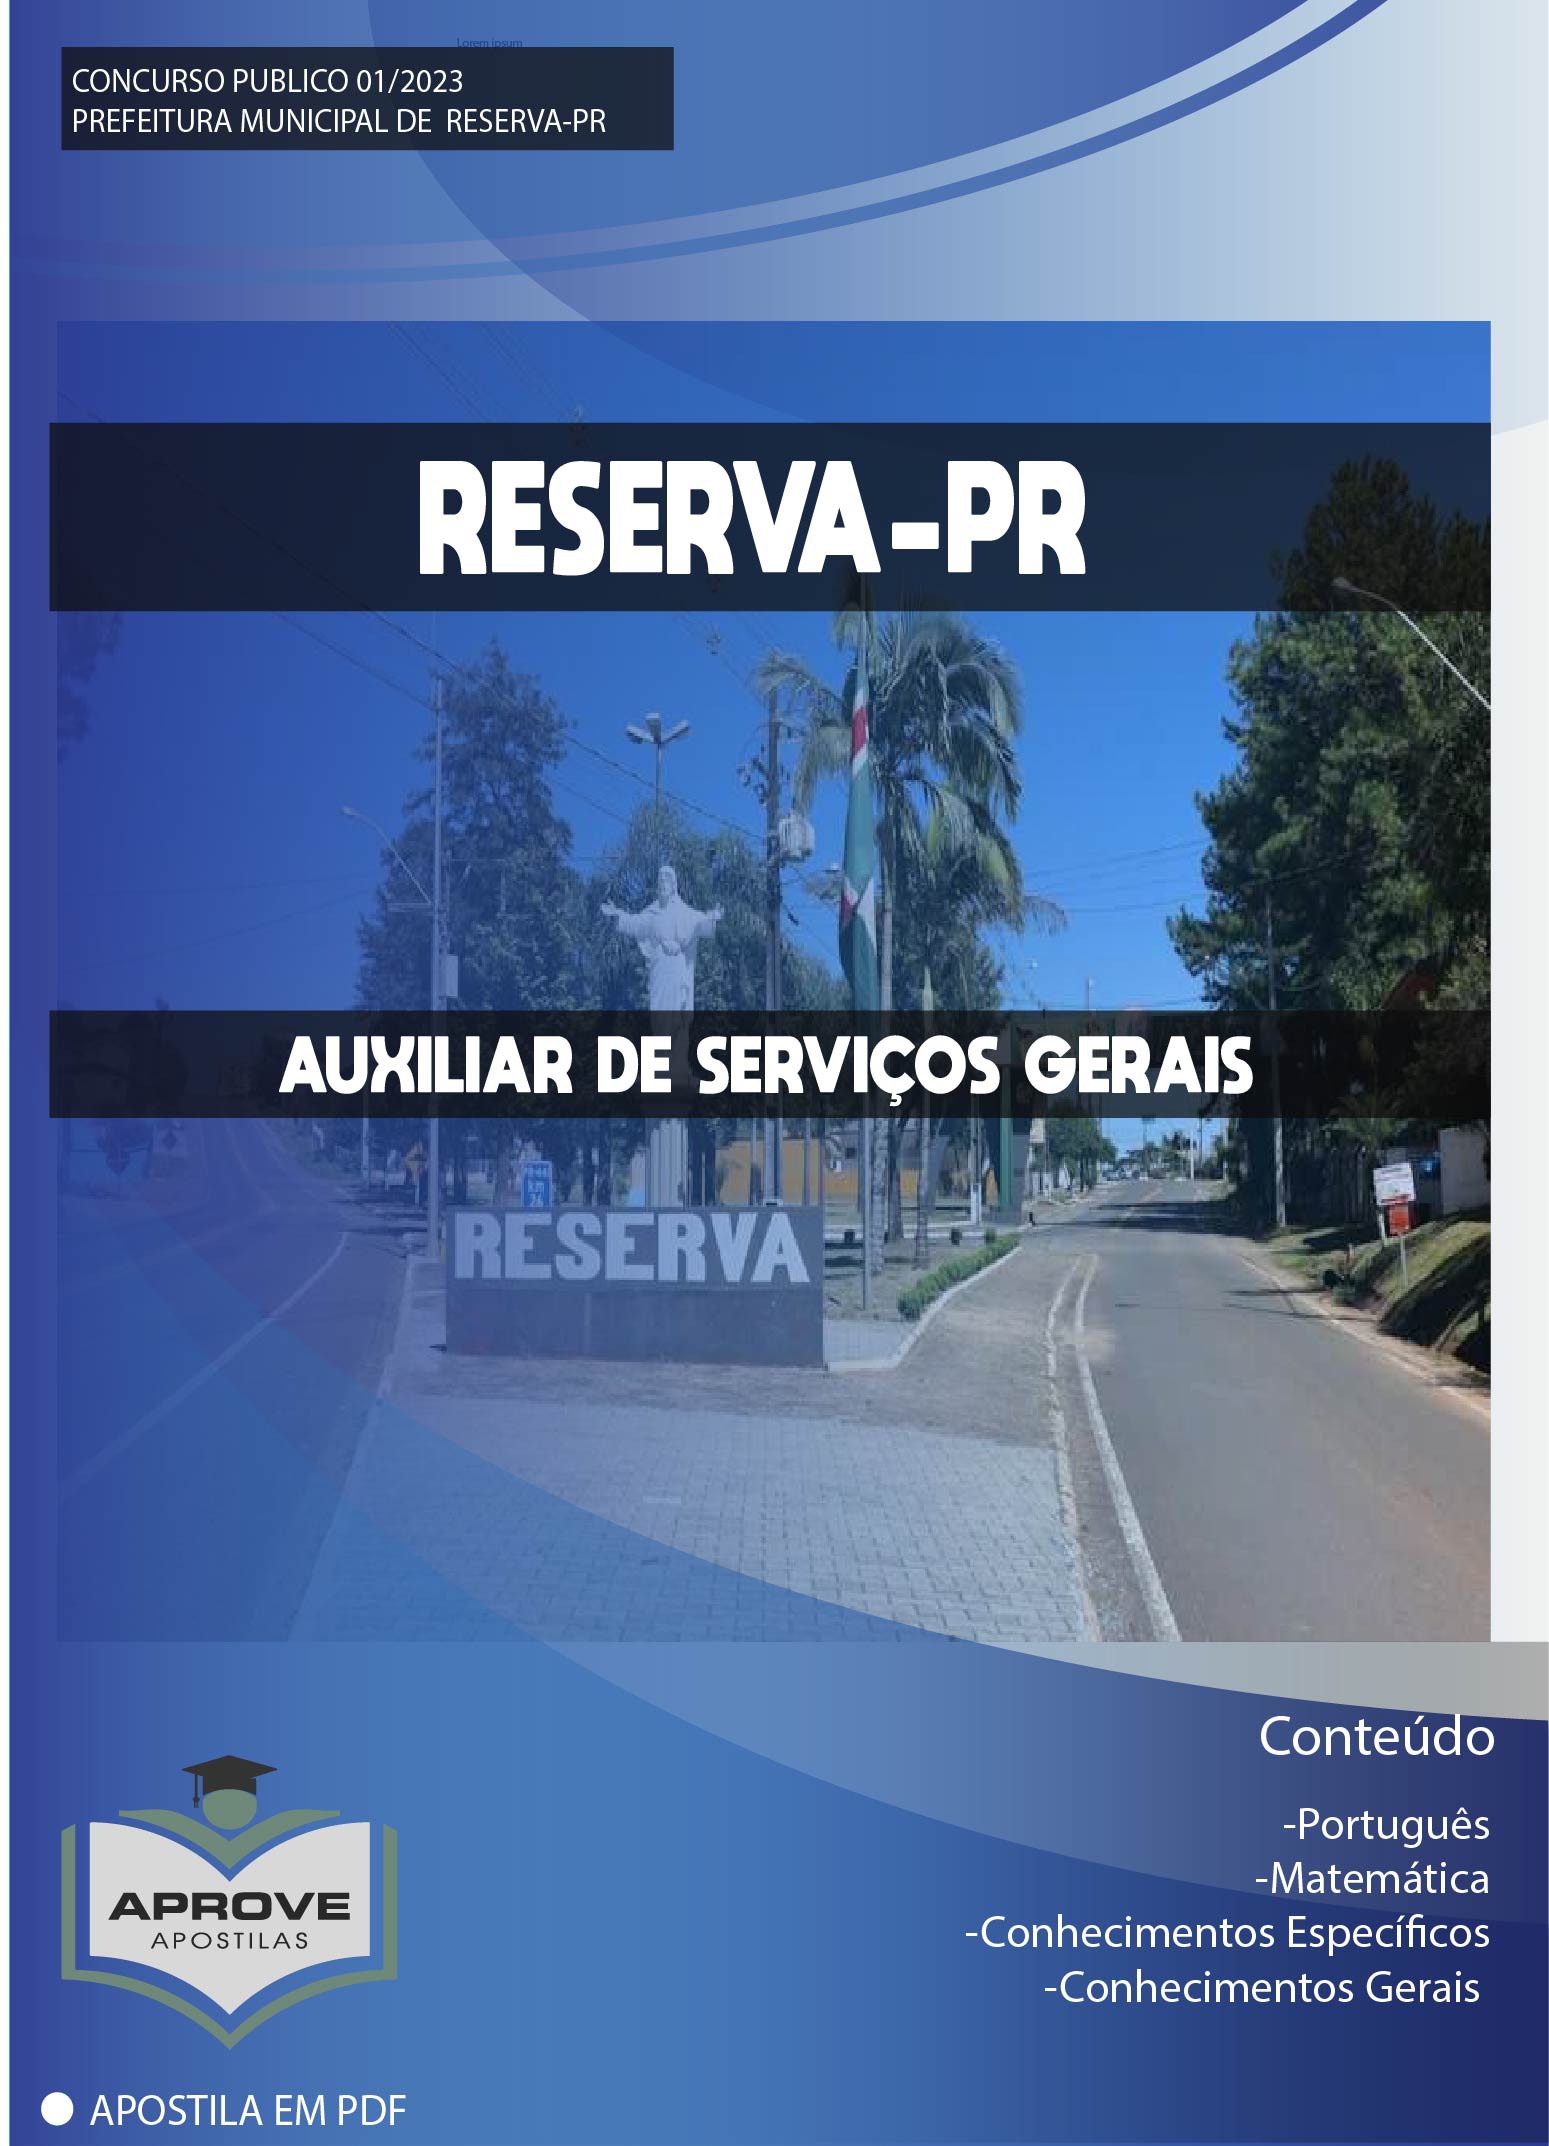 Apostila CRESS-RJ - Auxiliar de Serviços Gerais